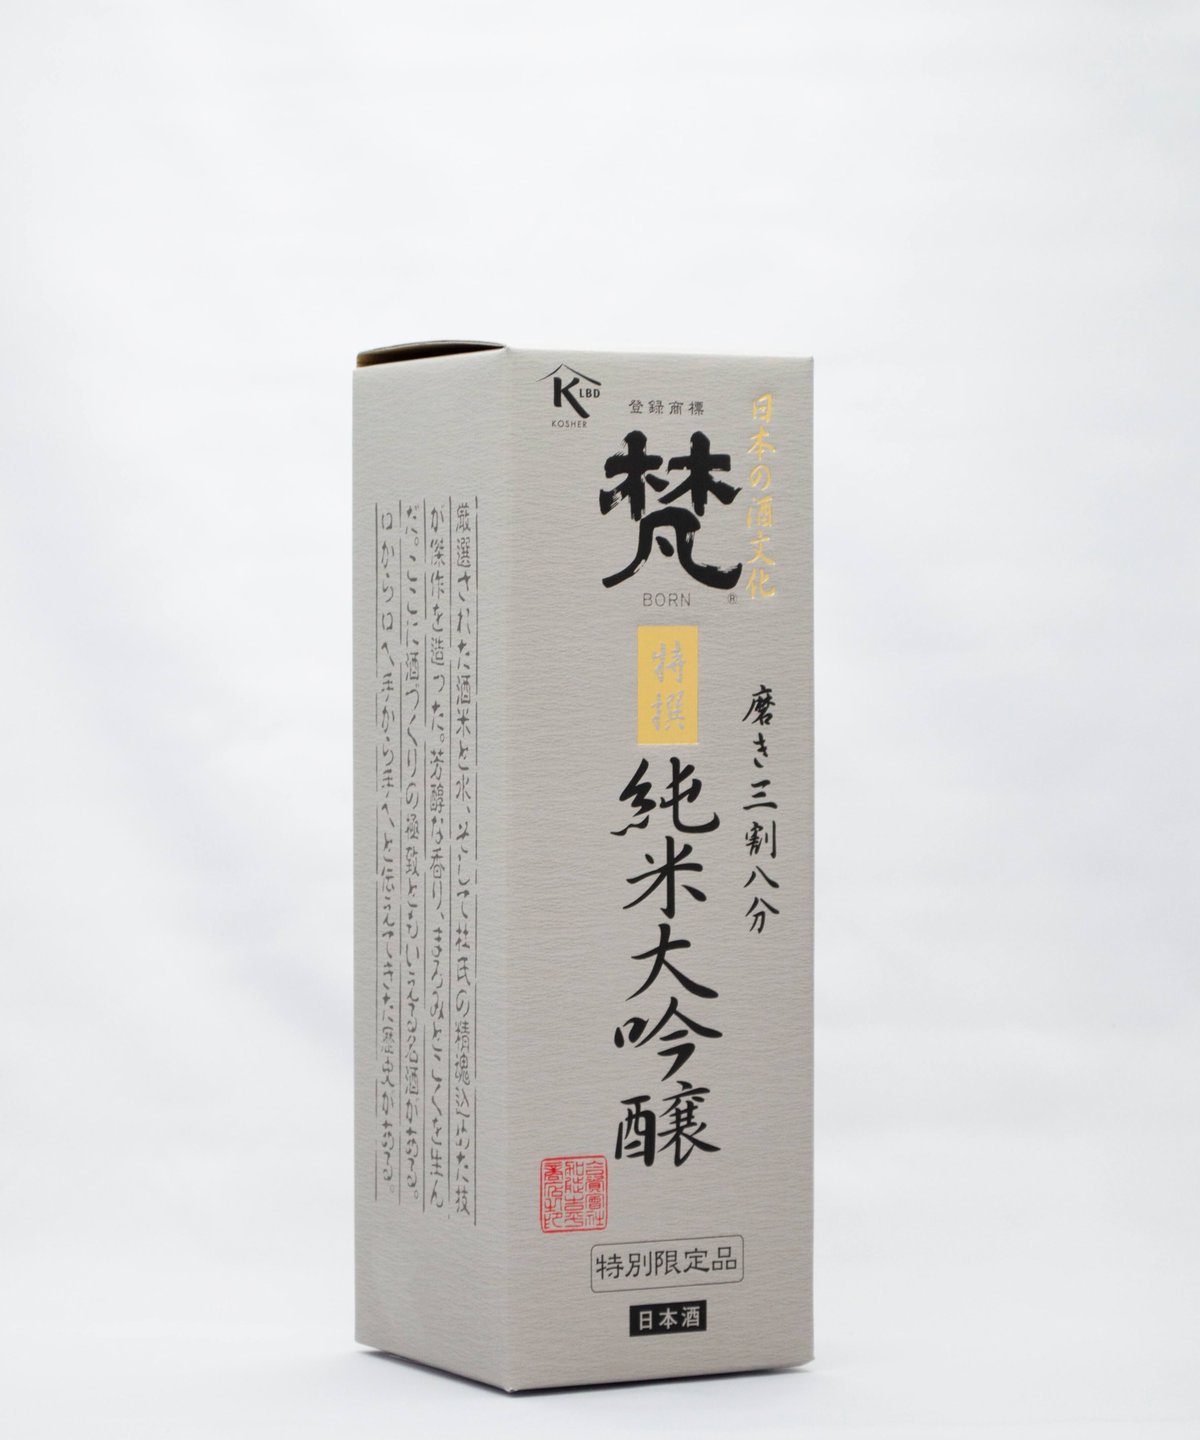 焼酎 魁偉（かいい）、黒麹作り 龍宮、日本酒 純米大吟醸酒 梵 磨き三